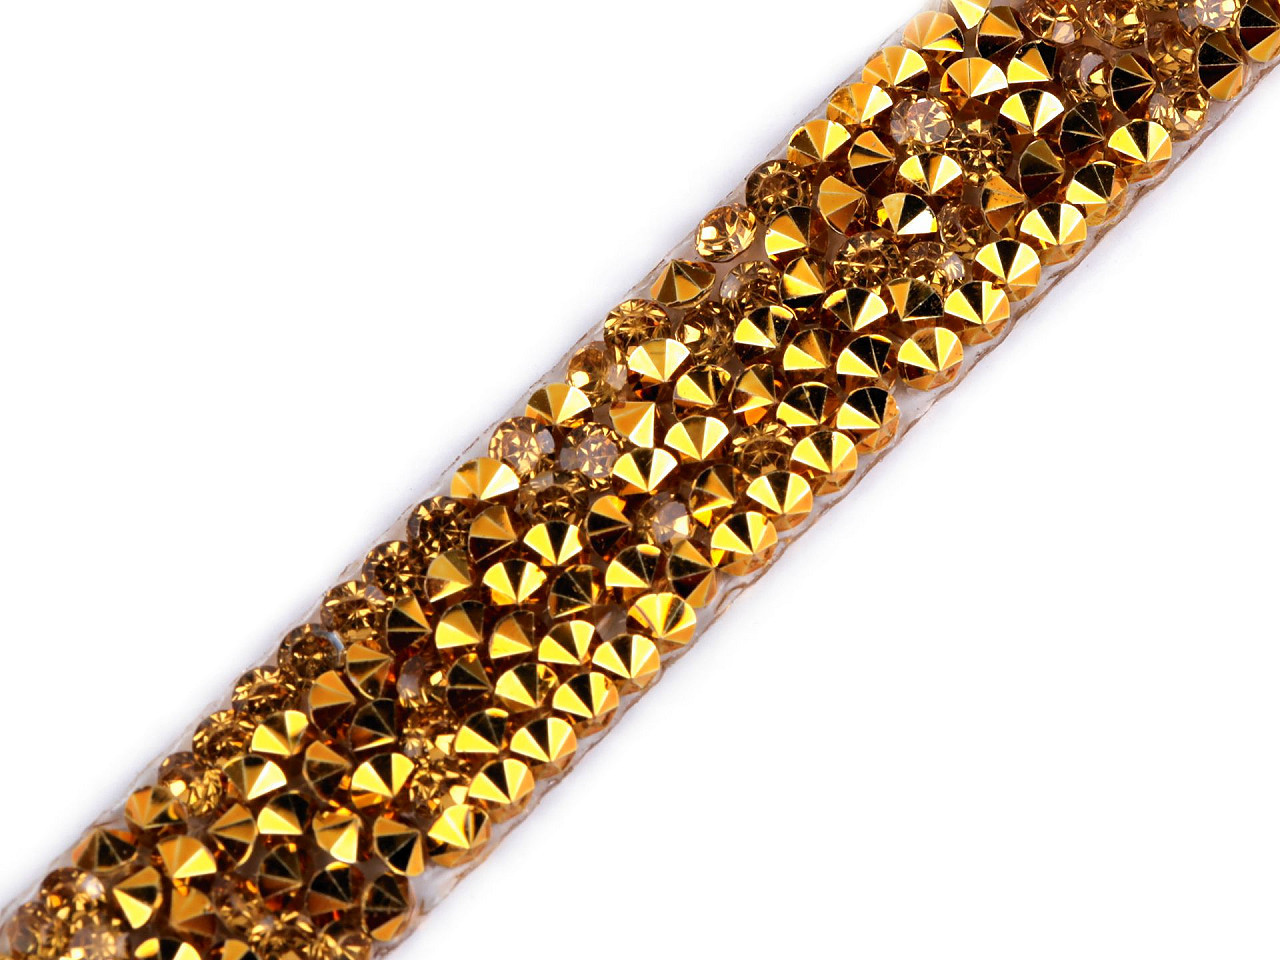 Prýmek s kamínky šíře 12 mm nažehlovací Varianta: 11 zlatá, Balení: 9 m